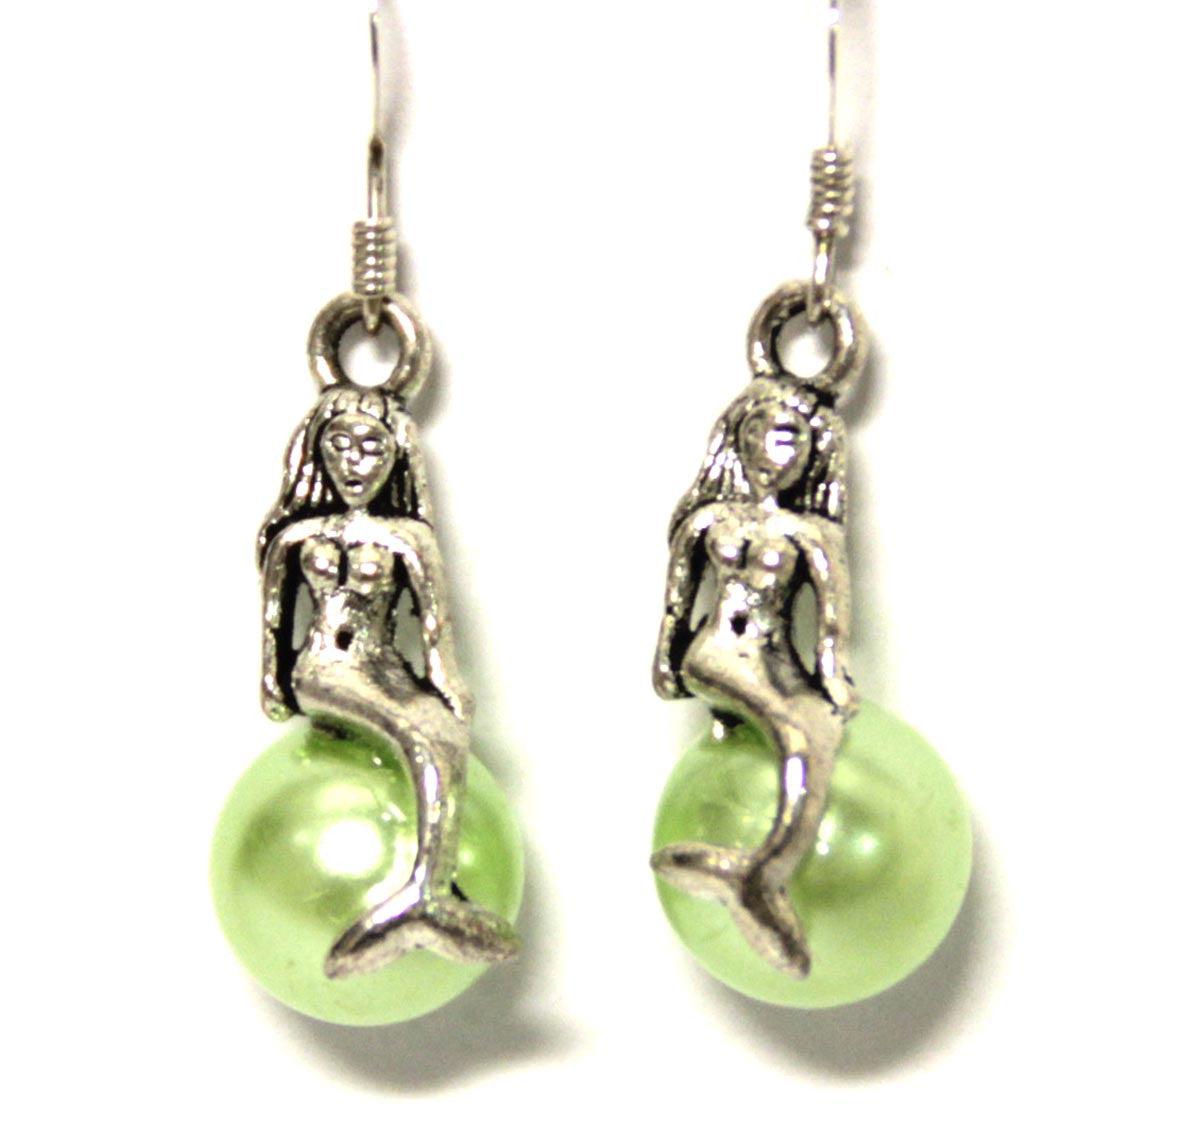 Mermaid on a Green Pearl Earrings